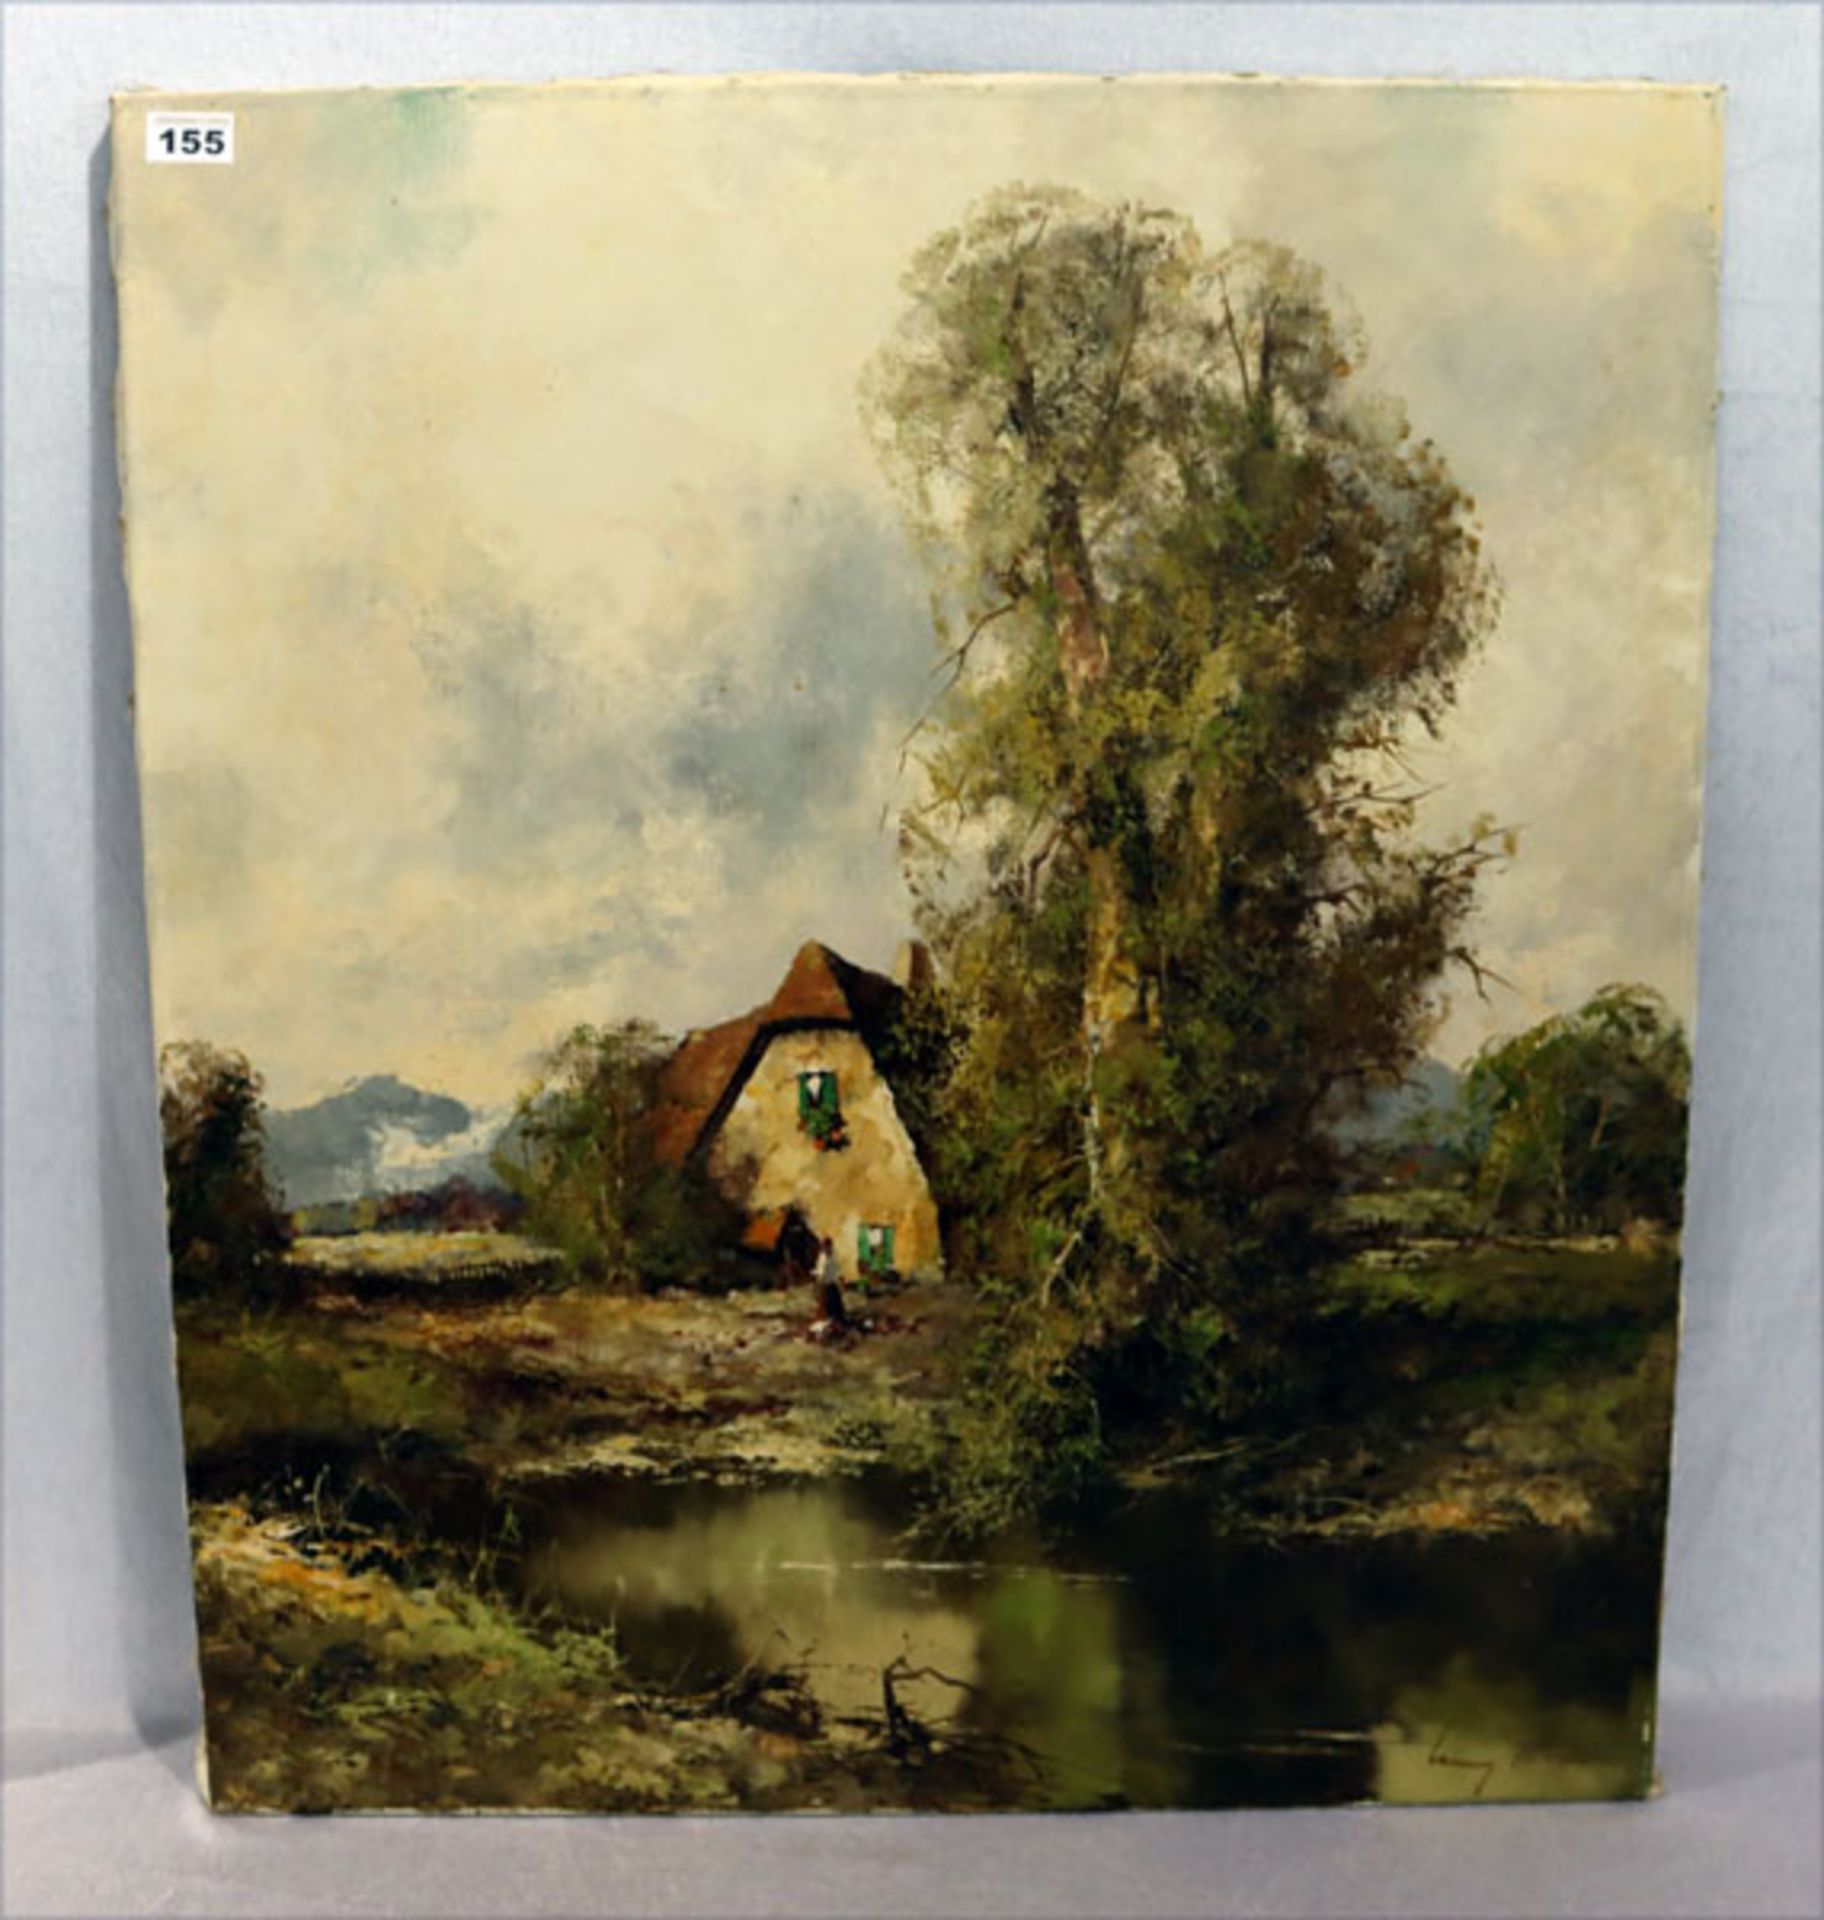 Gemälde ÖL/LW 'Landschafts-Szenerie mit Haus', undeutlich signiert, ohne Rahmen 81 cm x 70 cm